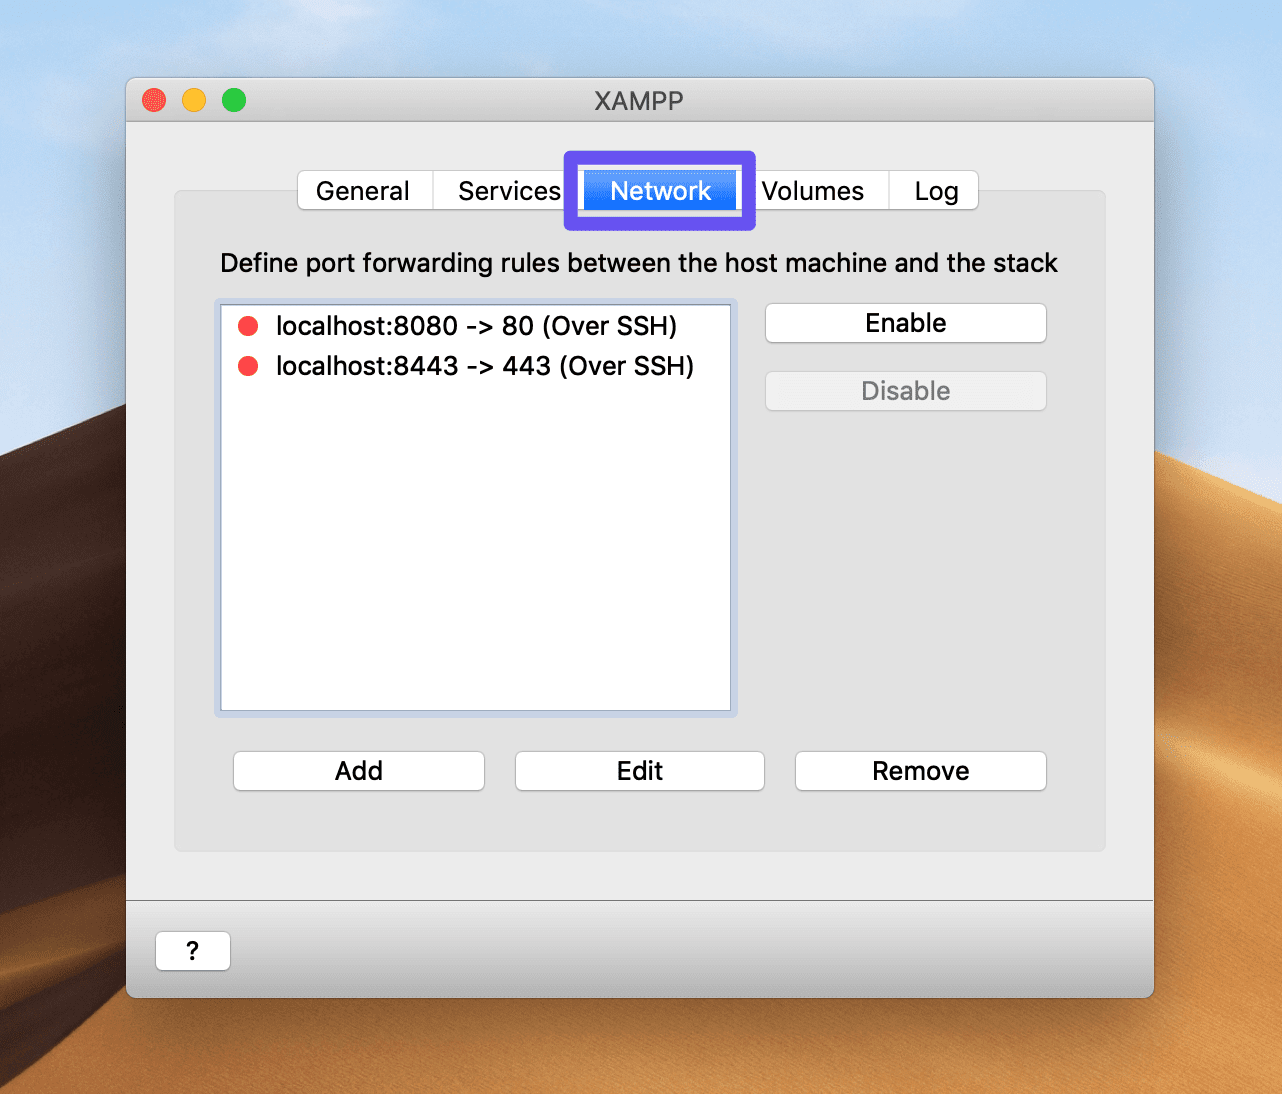 Accede a las opciones de red de XAMPP en macOS.